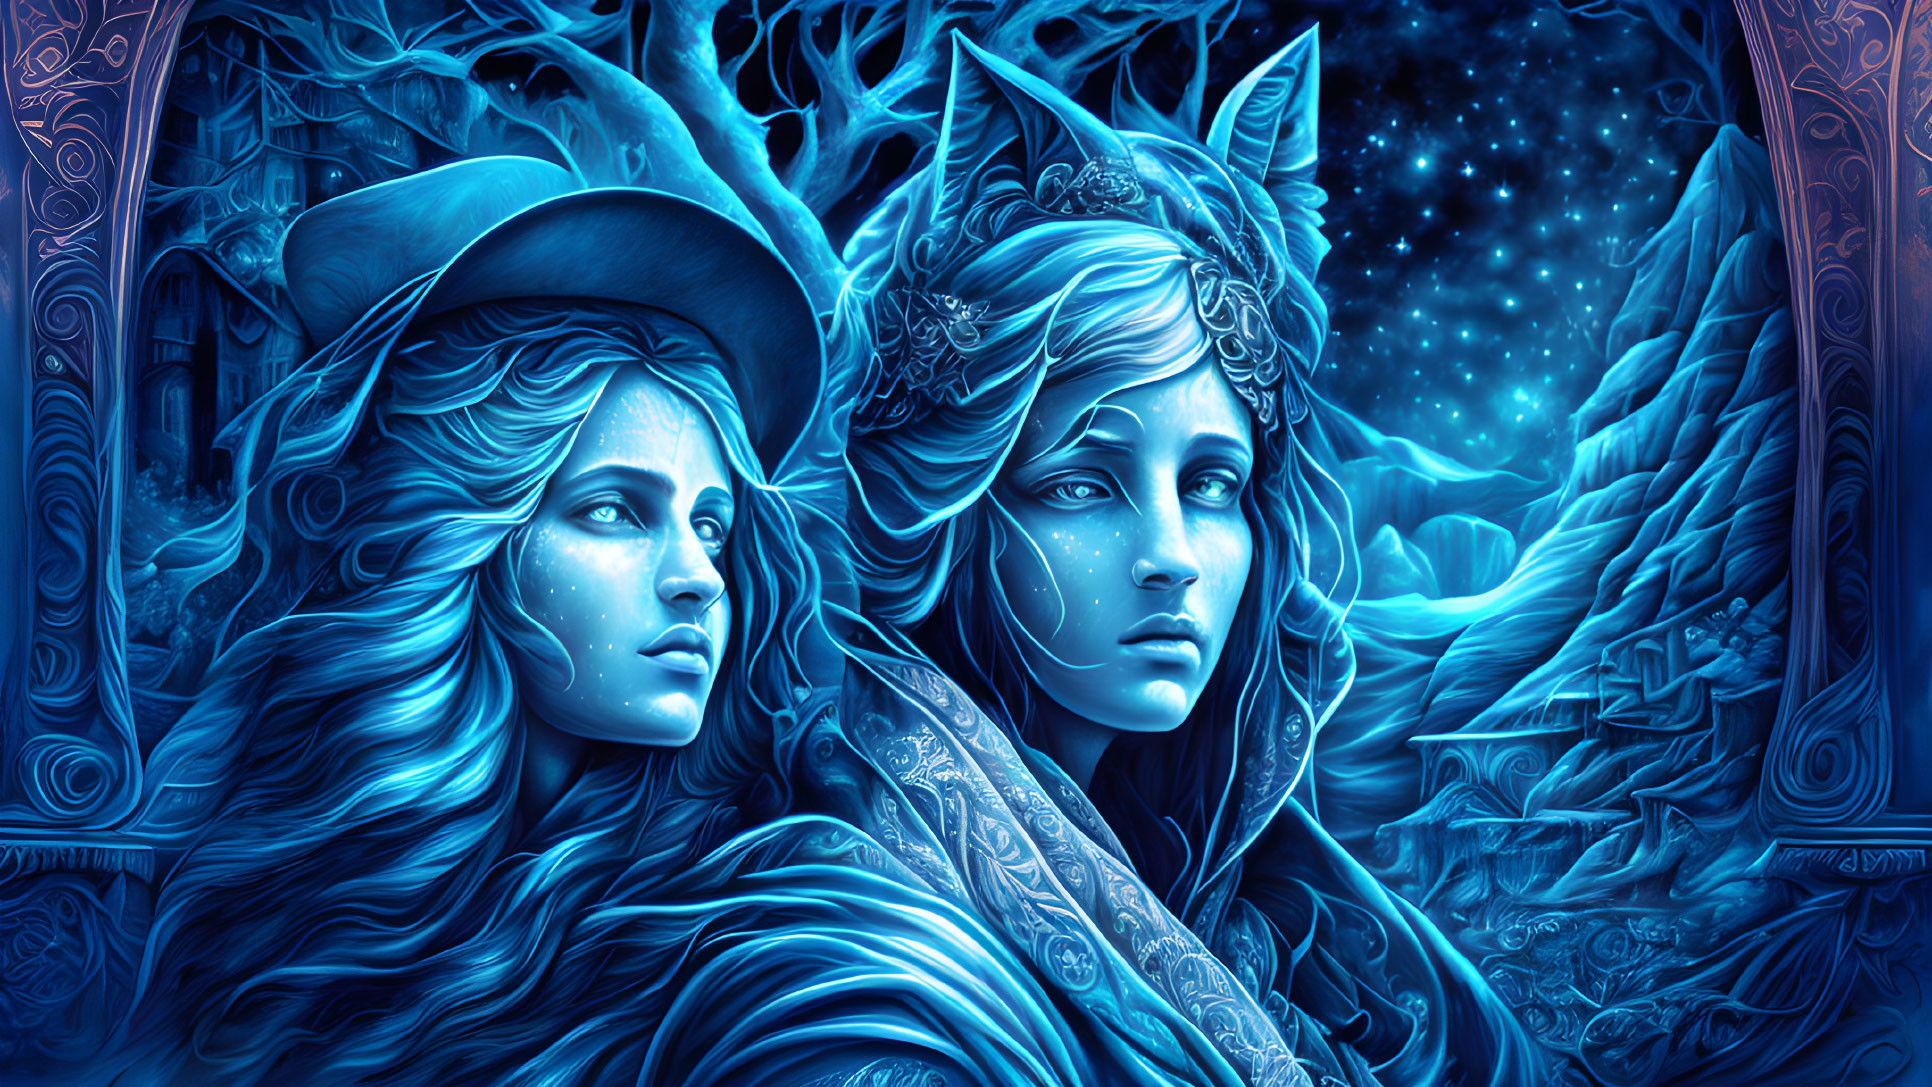 Mystical women with elaborate headwear in blue starry landscape